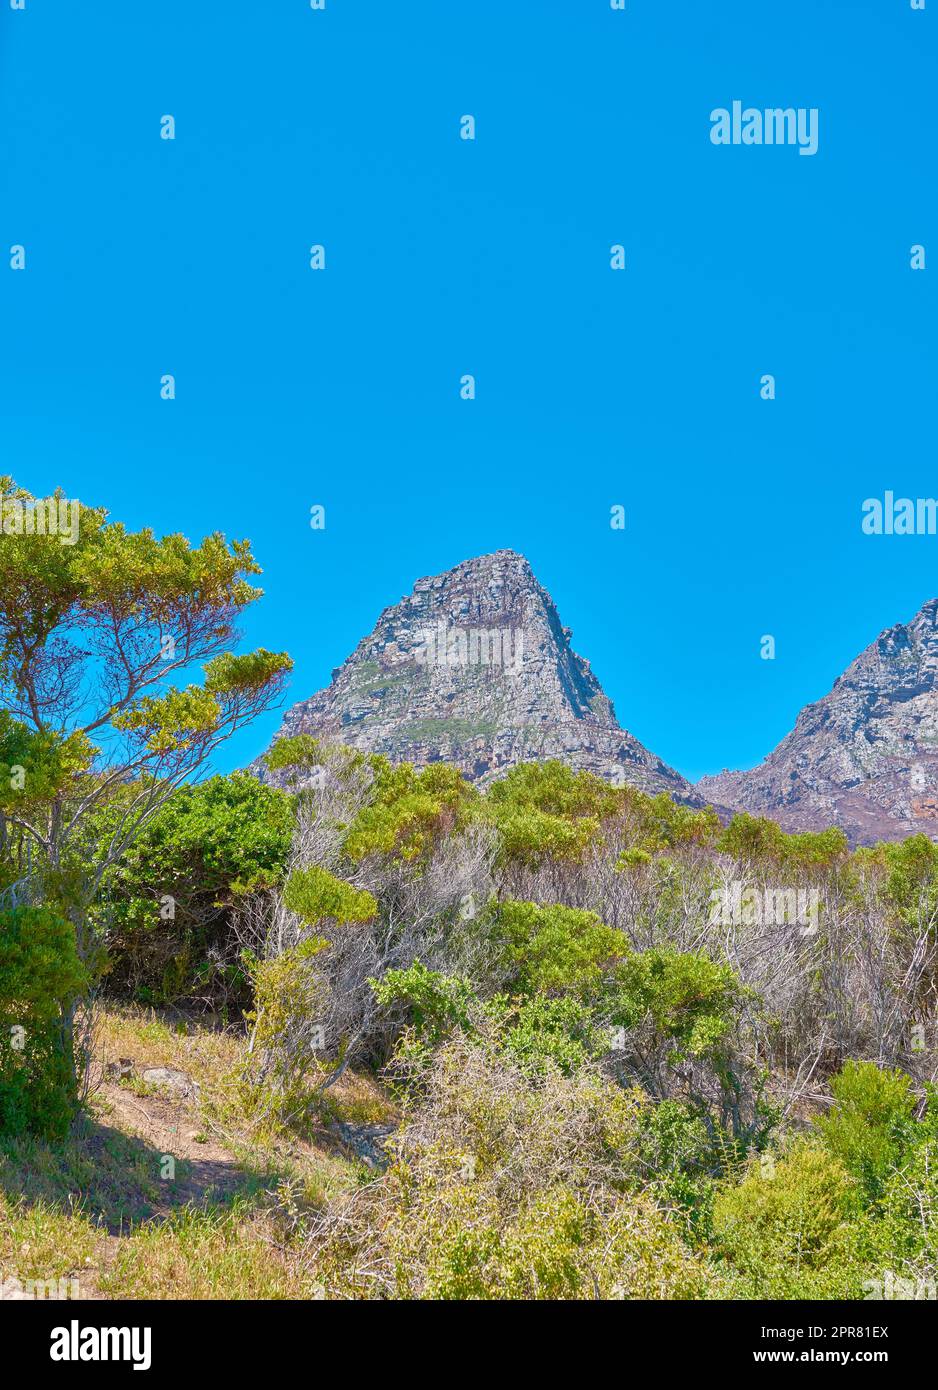 Malerischer Blick auf die Berglandschaft mit blauem Himmel und Kopierfläche von zwölf Aposteln in Kapstadt, Südafrika. Berühmte steile Wanderwege, Trekking-Gelände mit wachsenden Bäumen und Büschen. Reisen und Tourismus Stockfoto